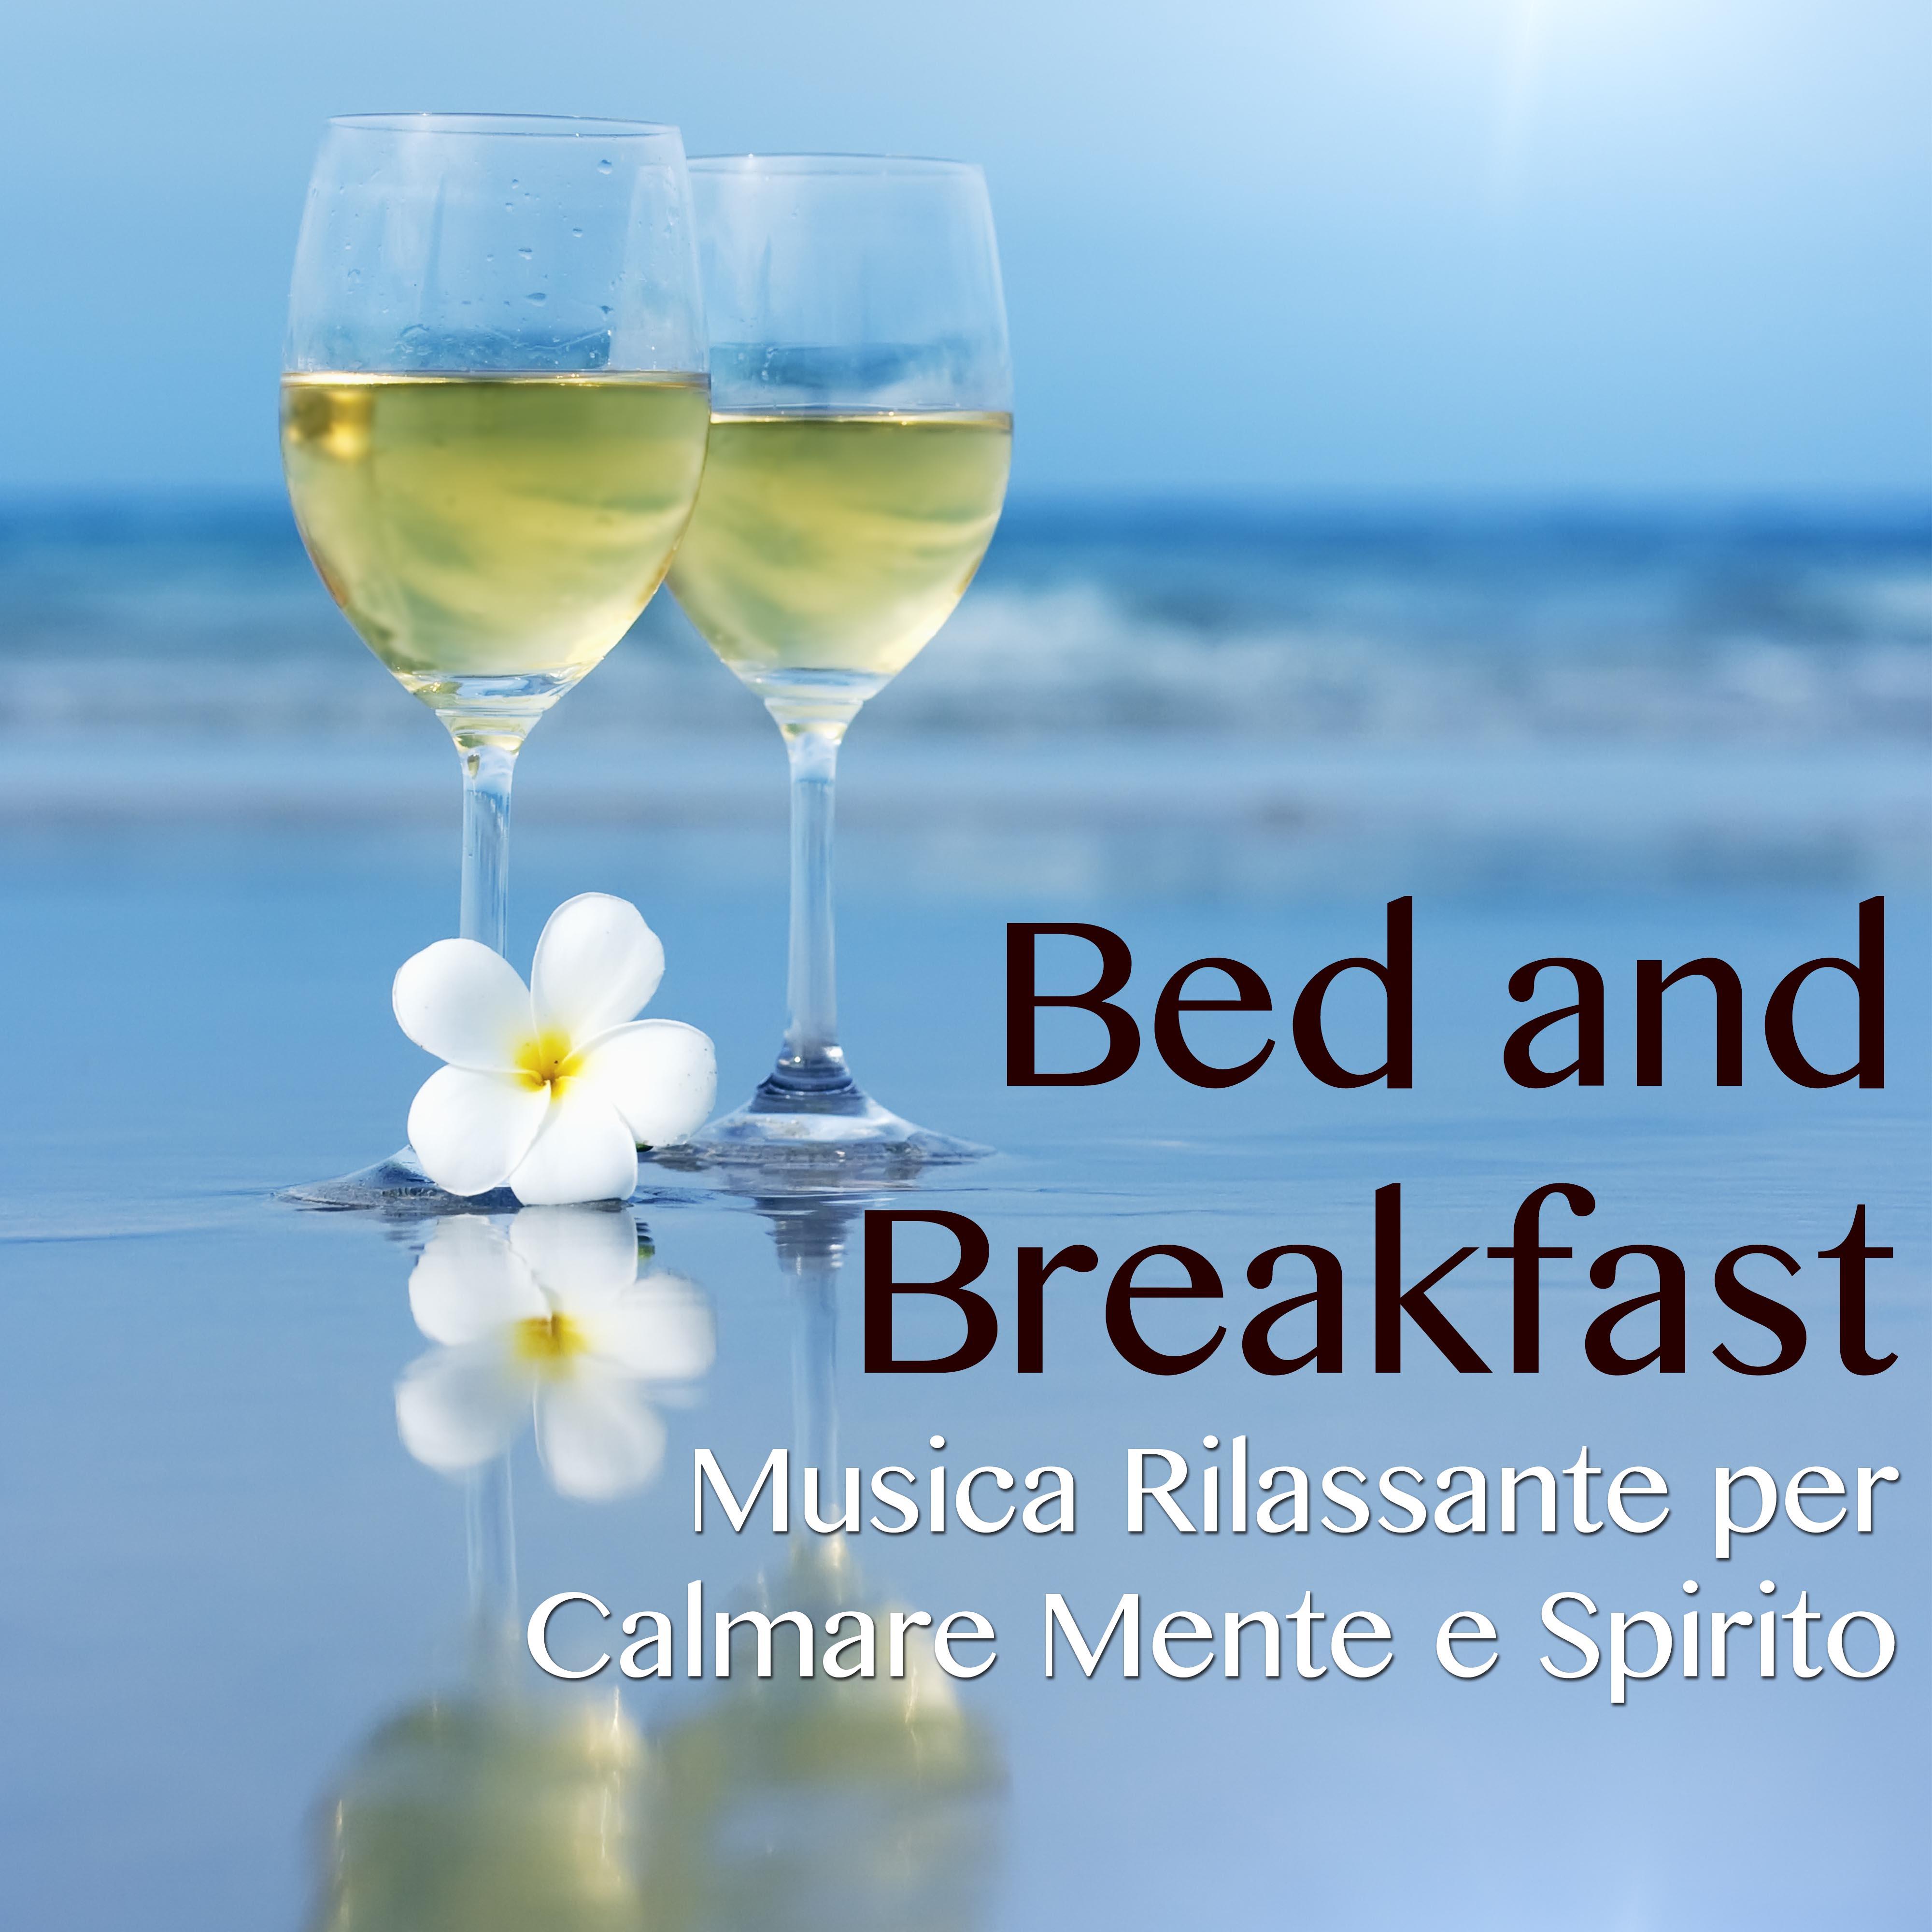 Bed and Breakfast: Musica Rilassante per Calmare Mente e Spirito